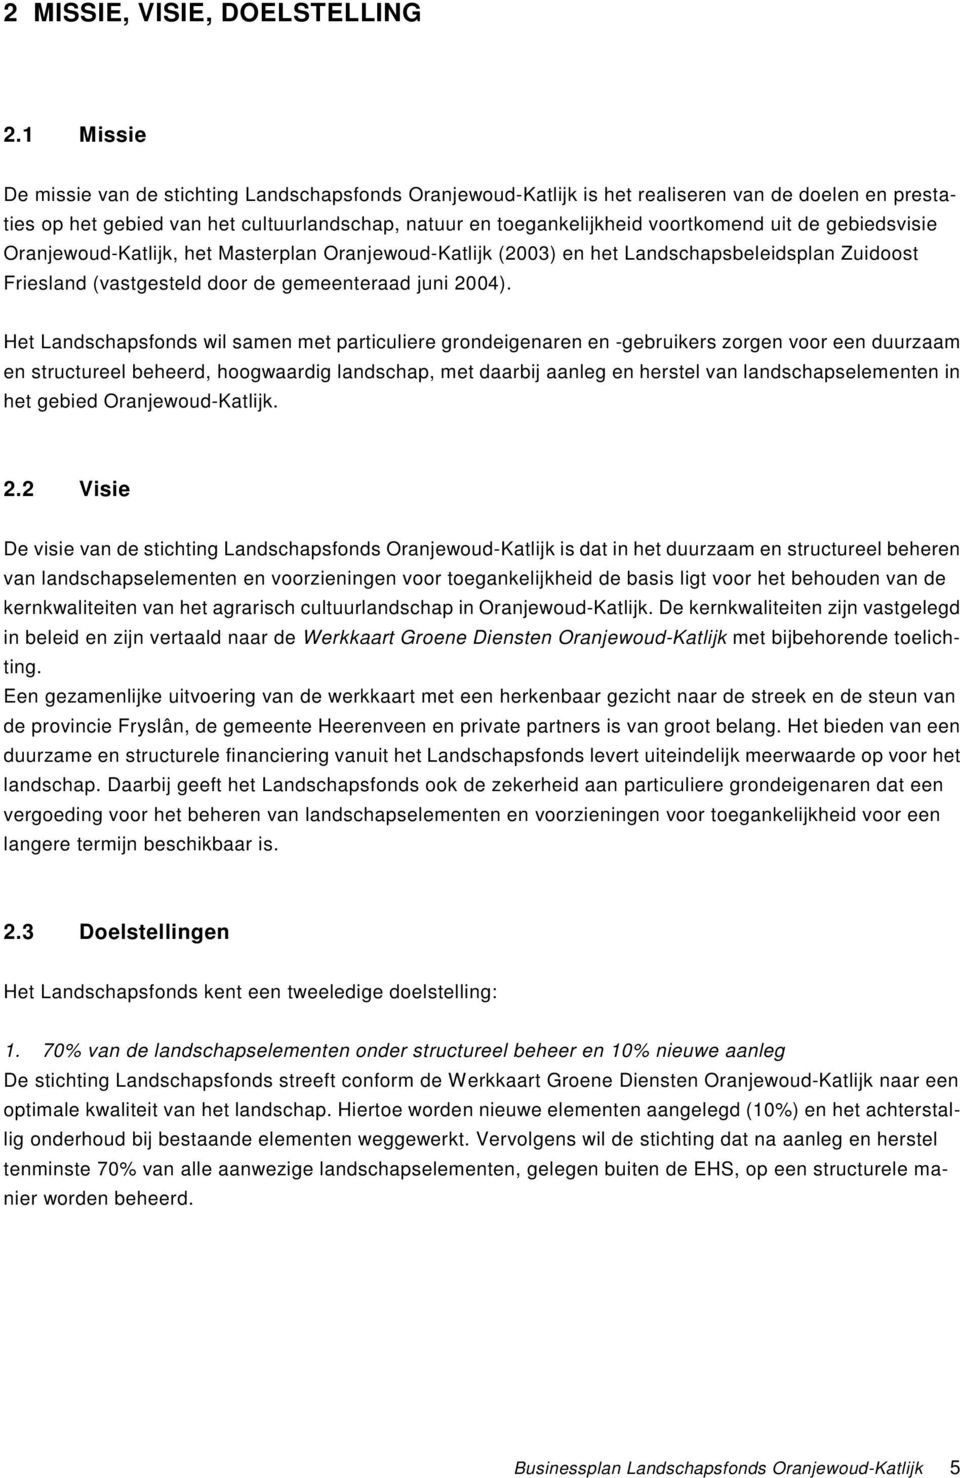 de gebiedsvisie Oranjewoud-Katlijk, het Masterplan Oranjewoud-Katlijk (2003) en het Landschapsbeleidsplan Zuidoost Friesland (vastgesteld door de gemeenteraad juni 2004).